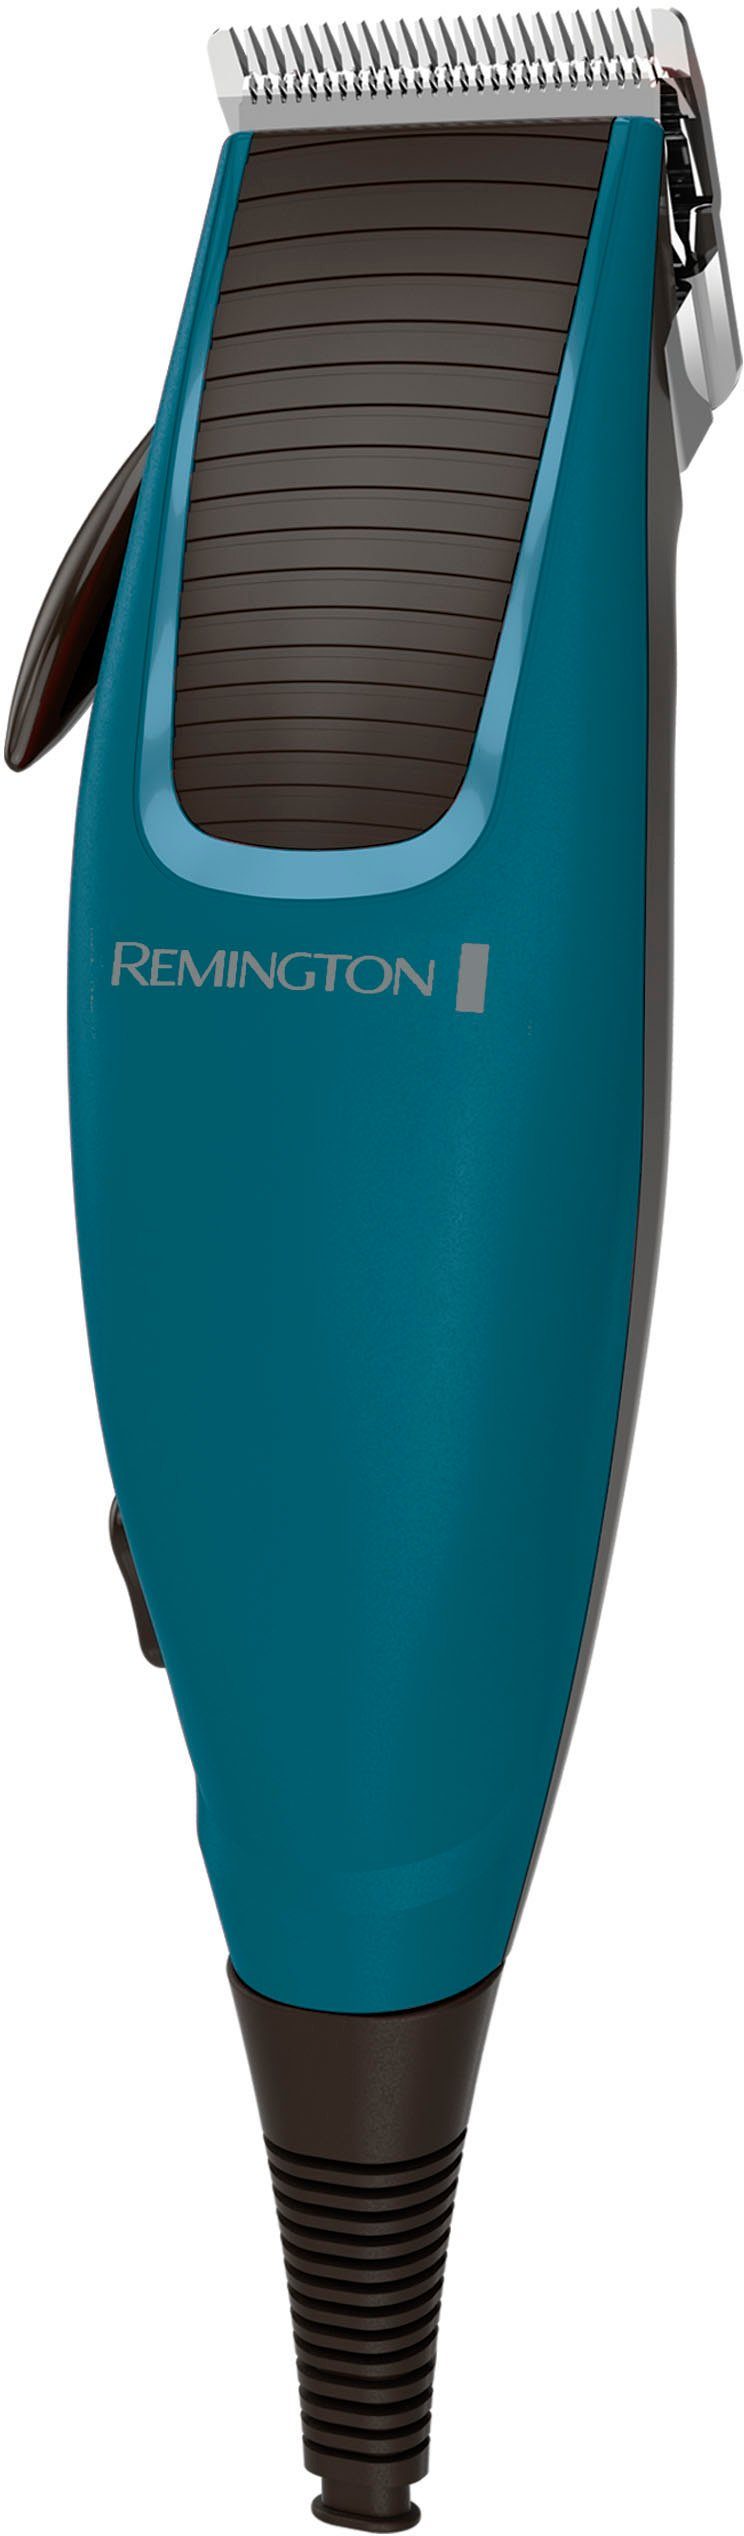 Remington Haarschneider Apprentice HC5020, mit viel Zubehör